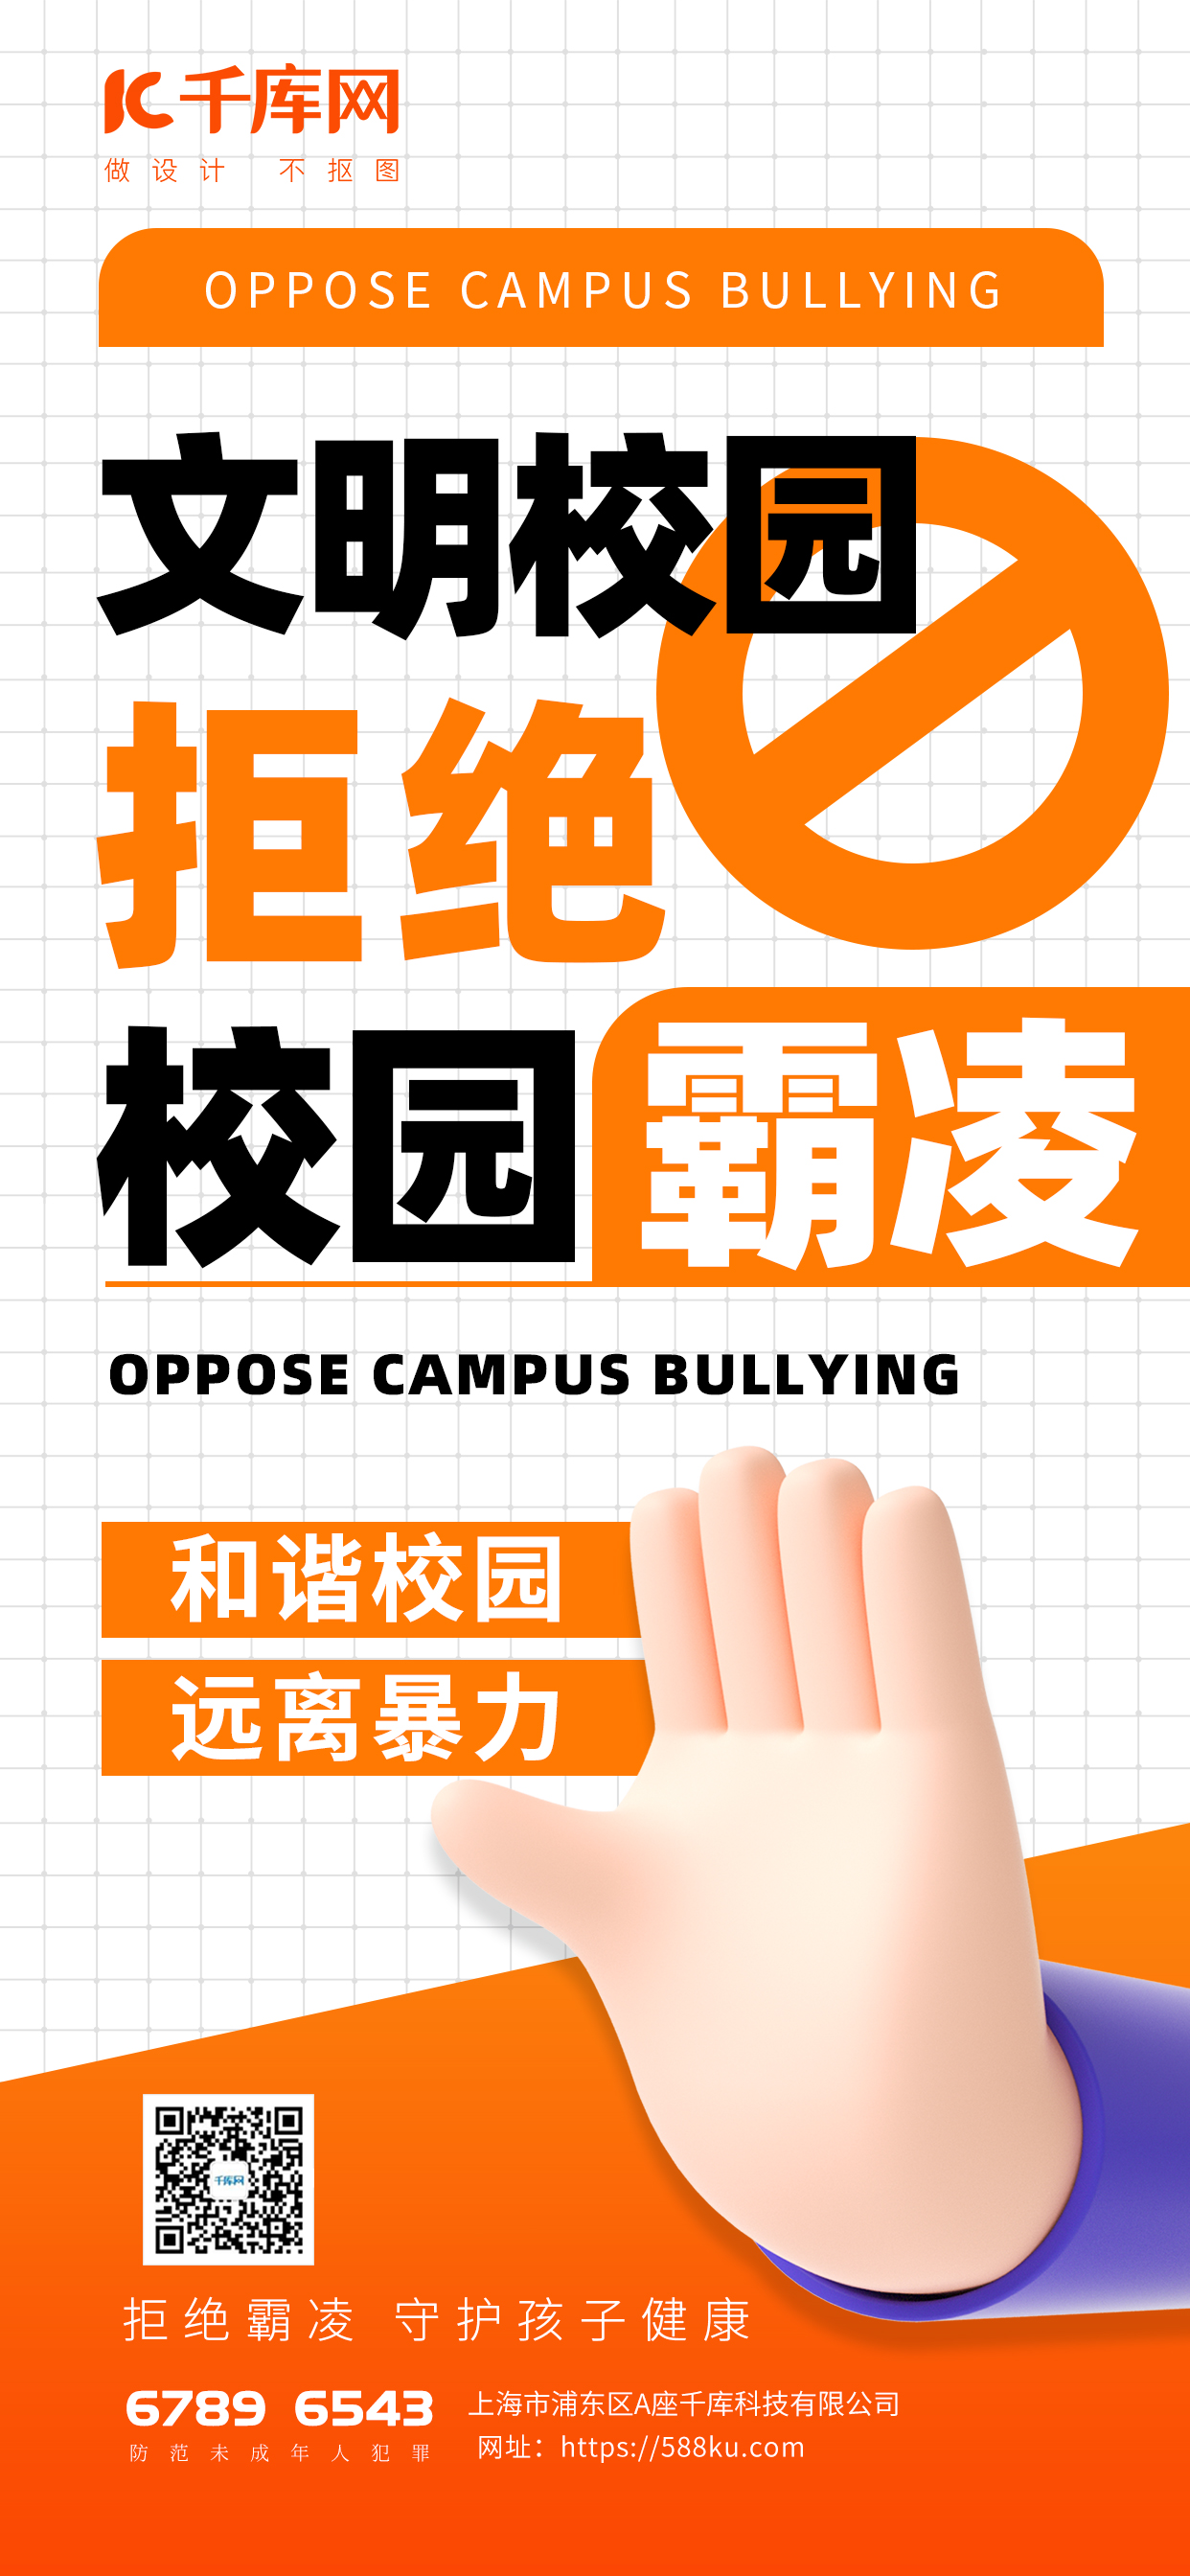 文明校园拒绝霸凌手势橙色渐变海报宣传海报模板图片